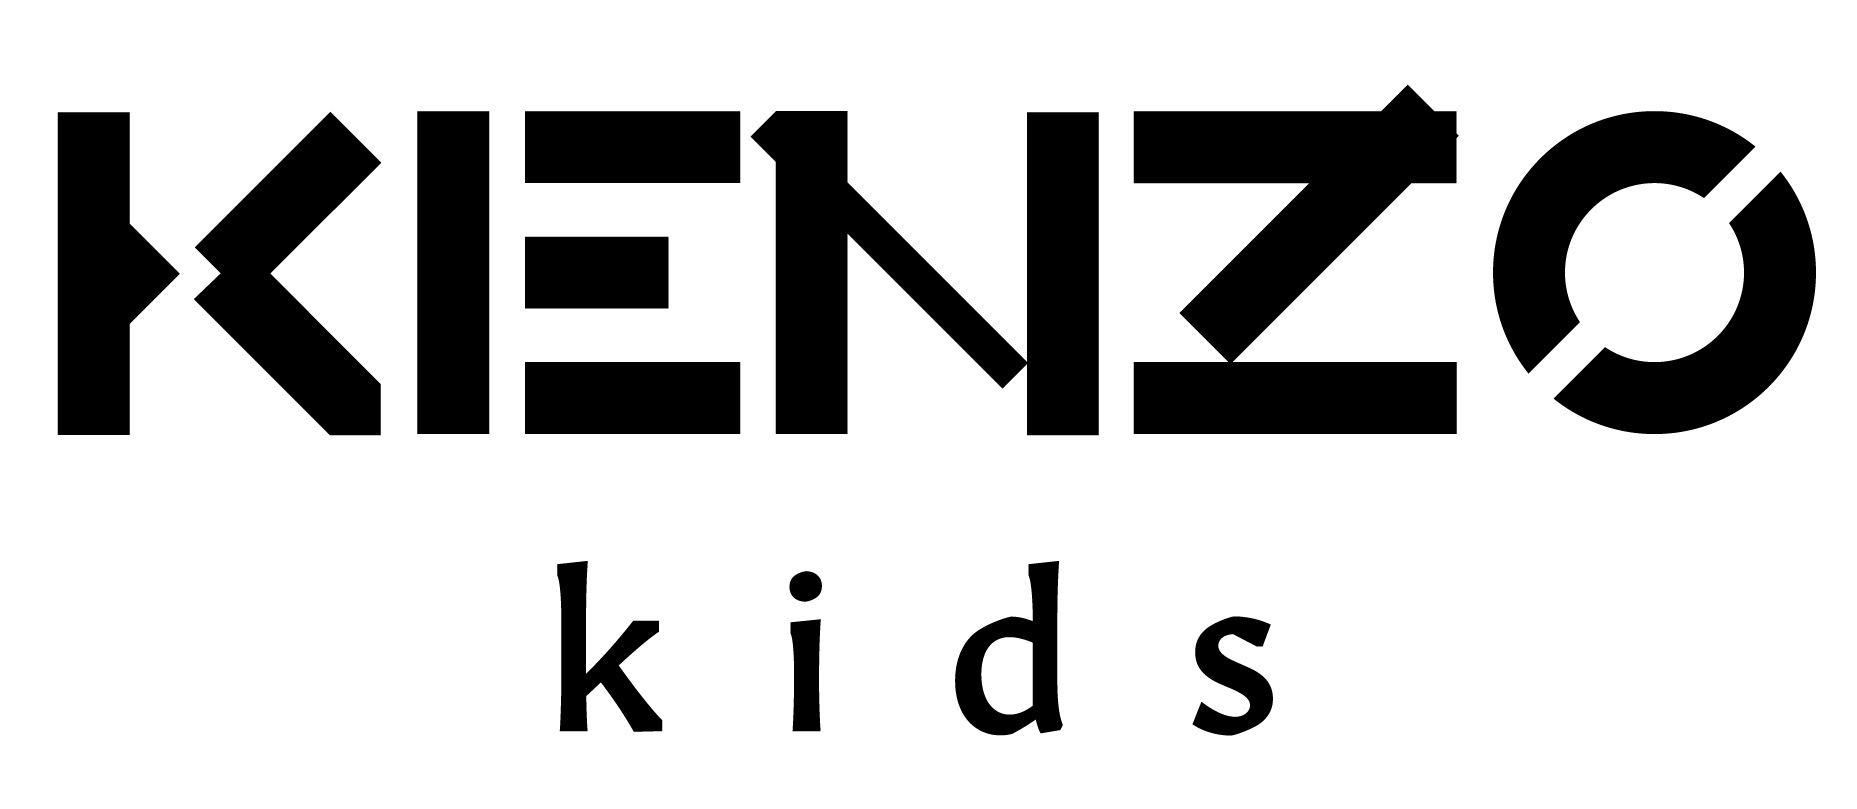 Kenzo Logo Significado Del Logotipo, Png, Vector | tyello.com